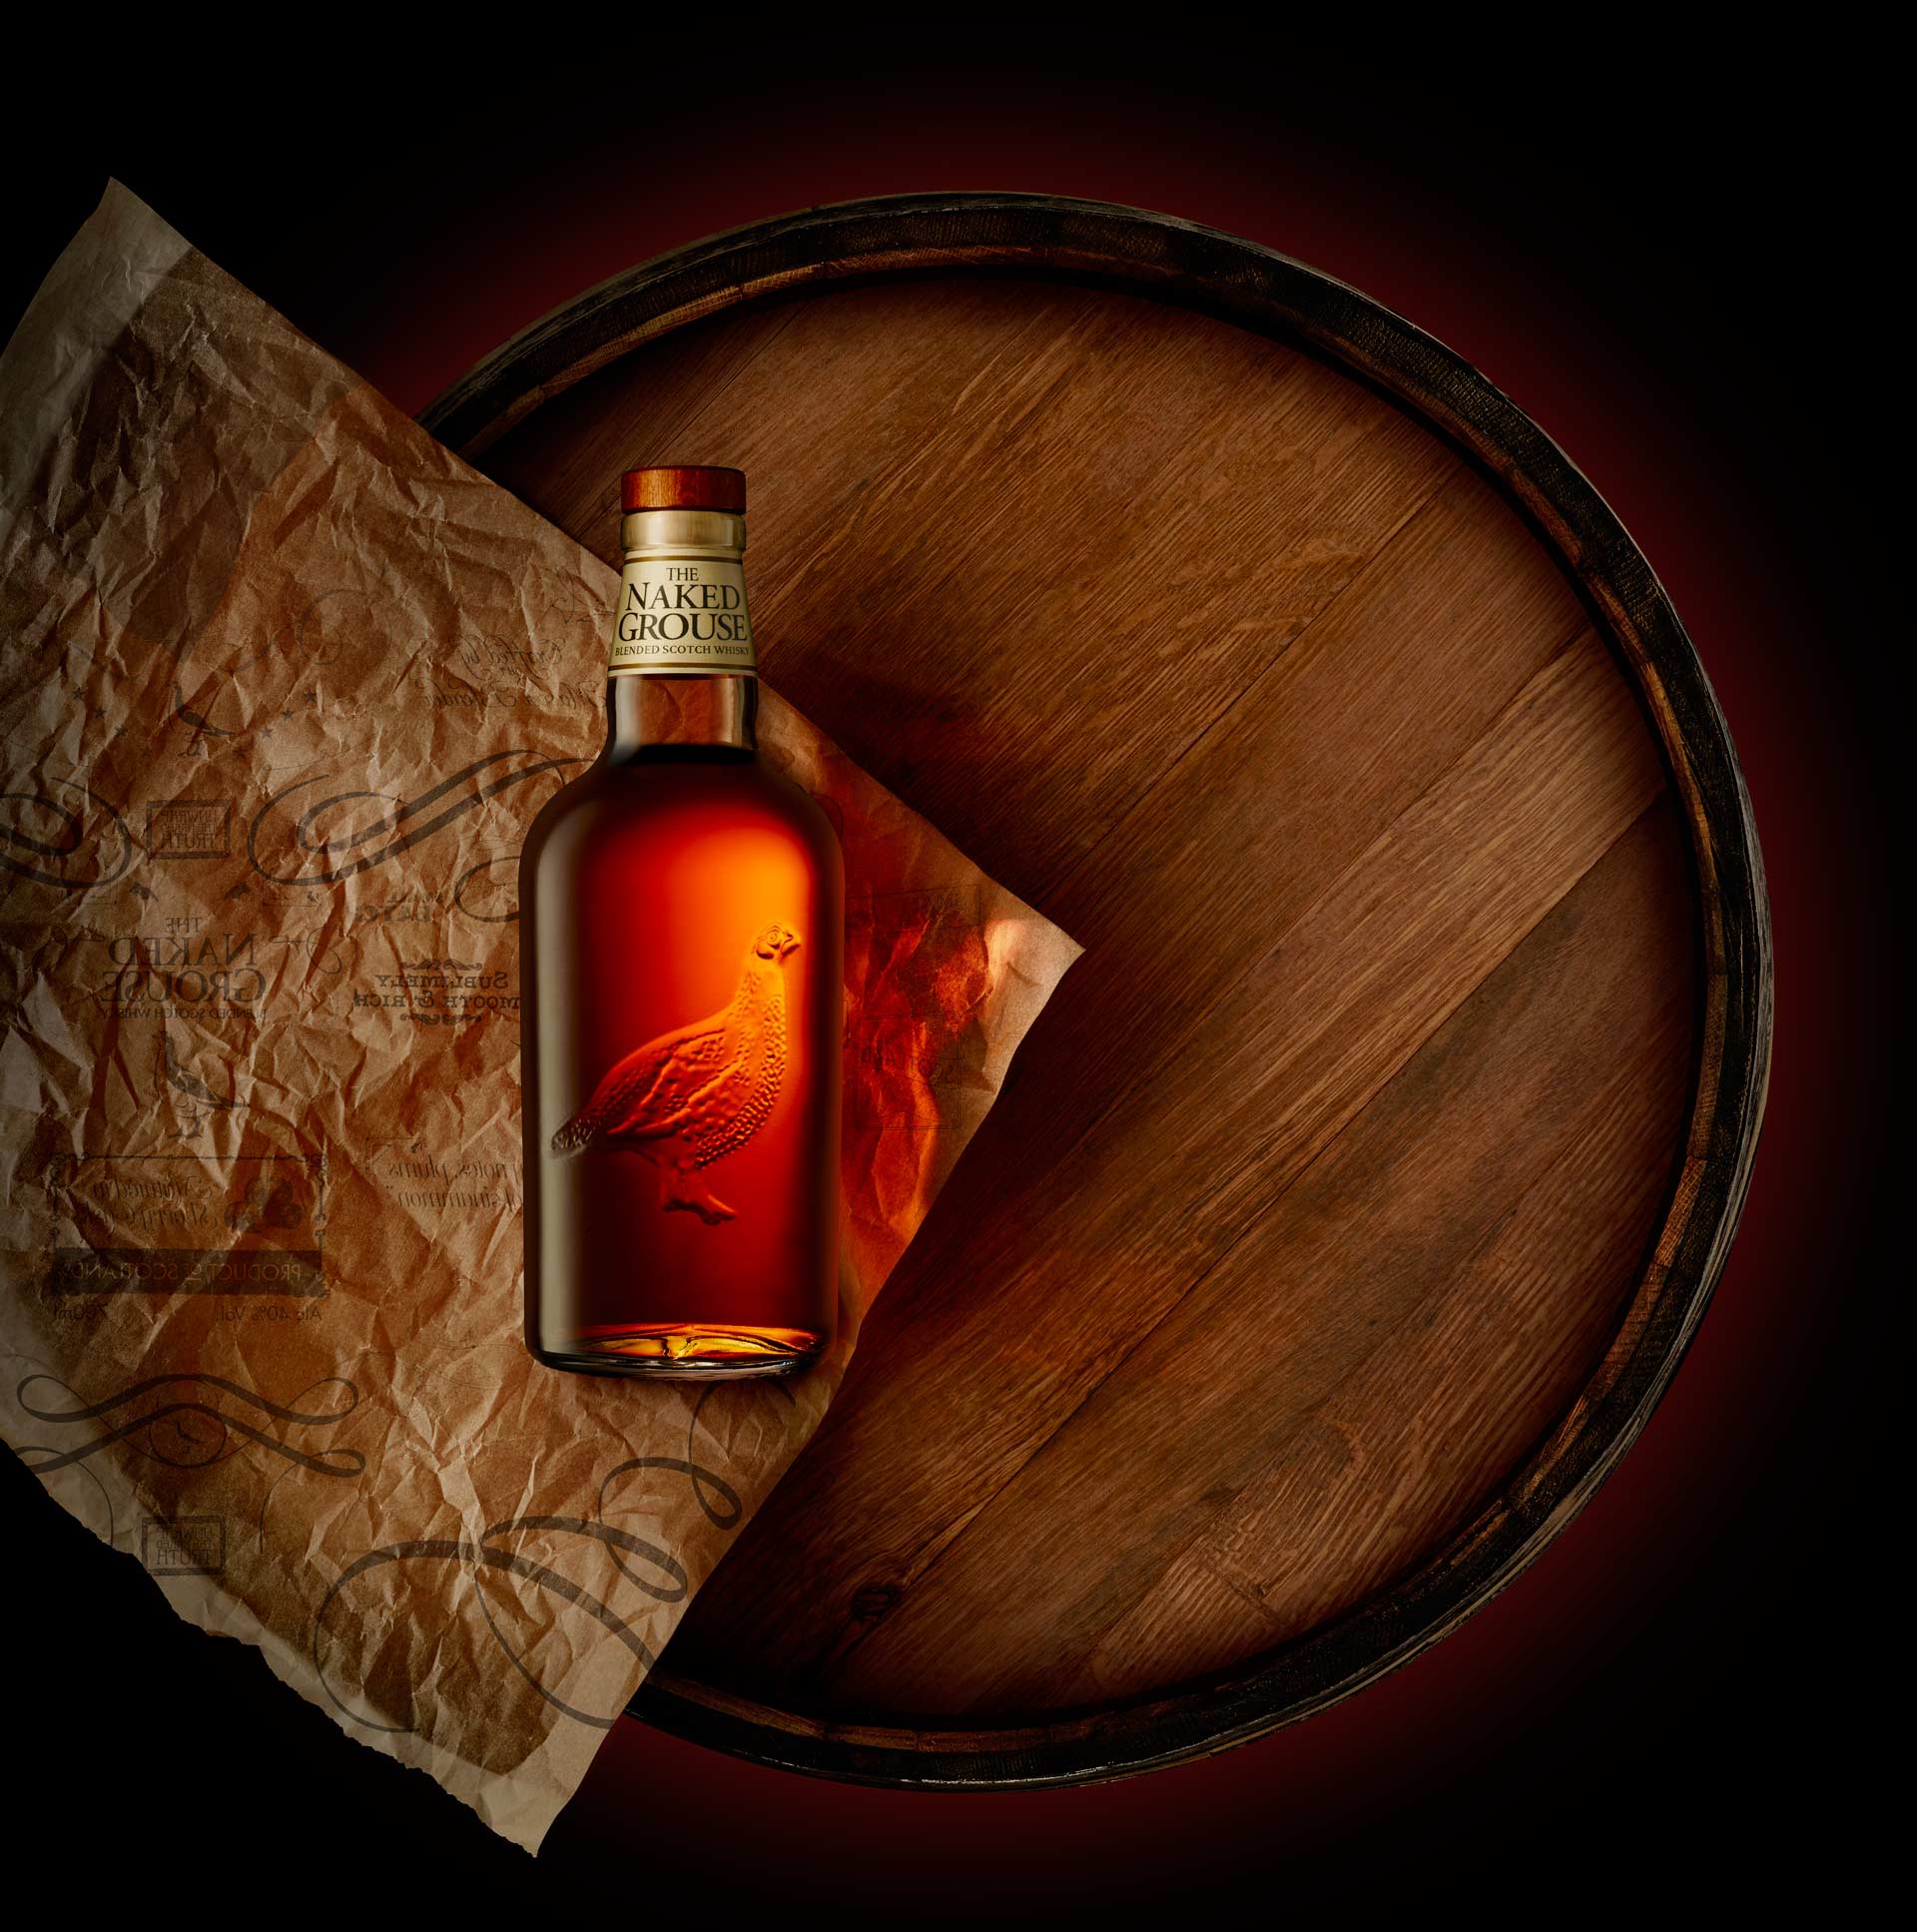 裸雀初次雪莉桶威士忌,NAKED GROUSE BLENDED MALT SCOTCH WHISKY